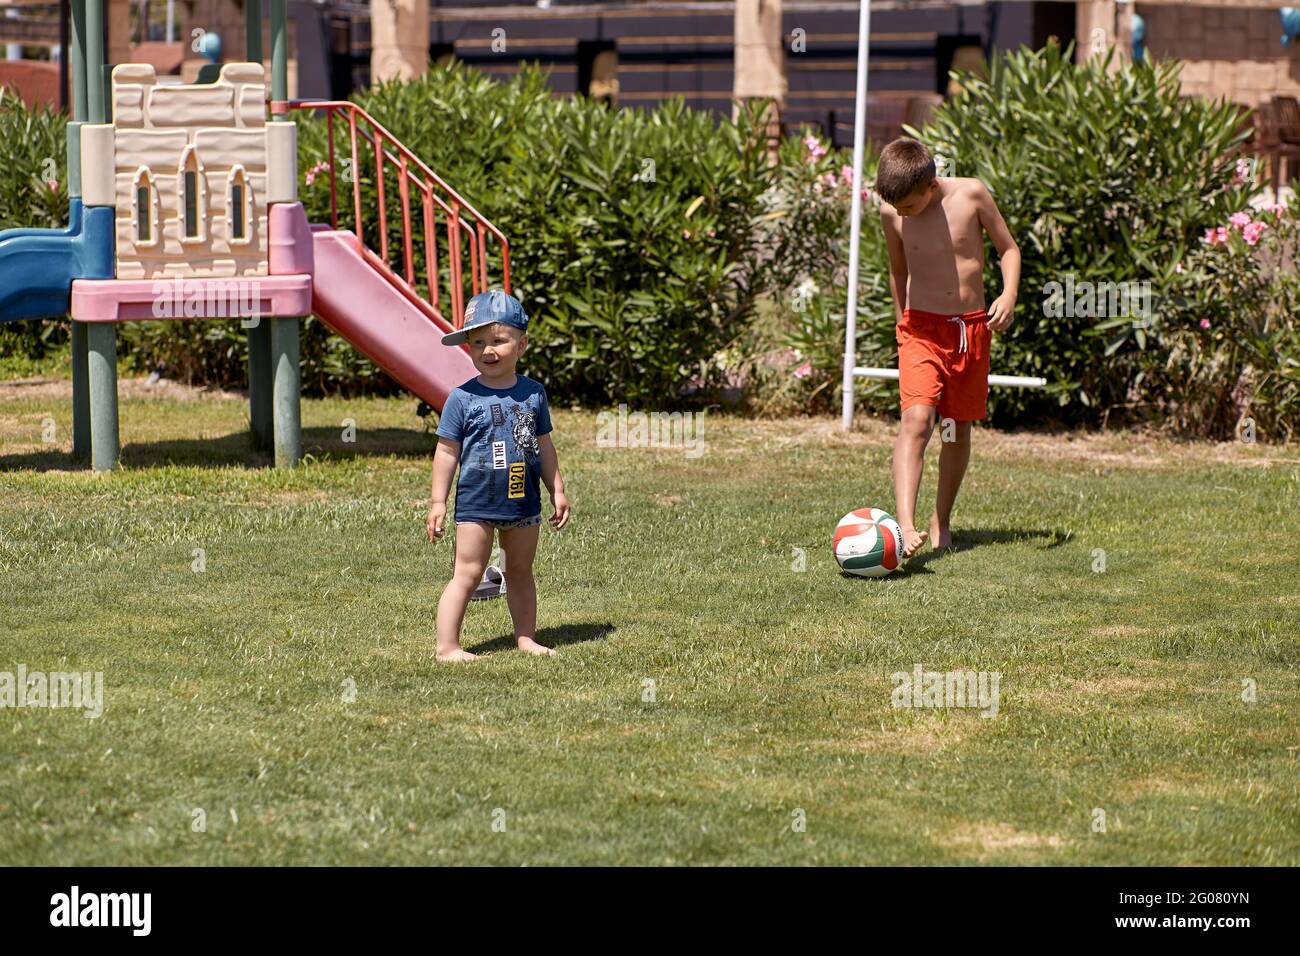 Kemer, Türkei - Mai, 21: Kleinkind und Teenager spielen bei sonnigem Wetter  auf grünem, frischem Rasen Fußball. Konzept von sozialer Distanz,  Sommerspaß und Urlaub. Hochwertige Fotos Stockfotografie - Alamy